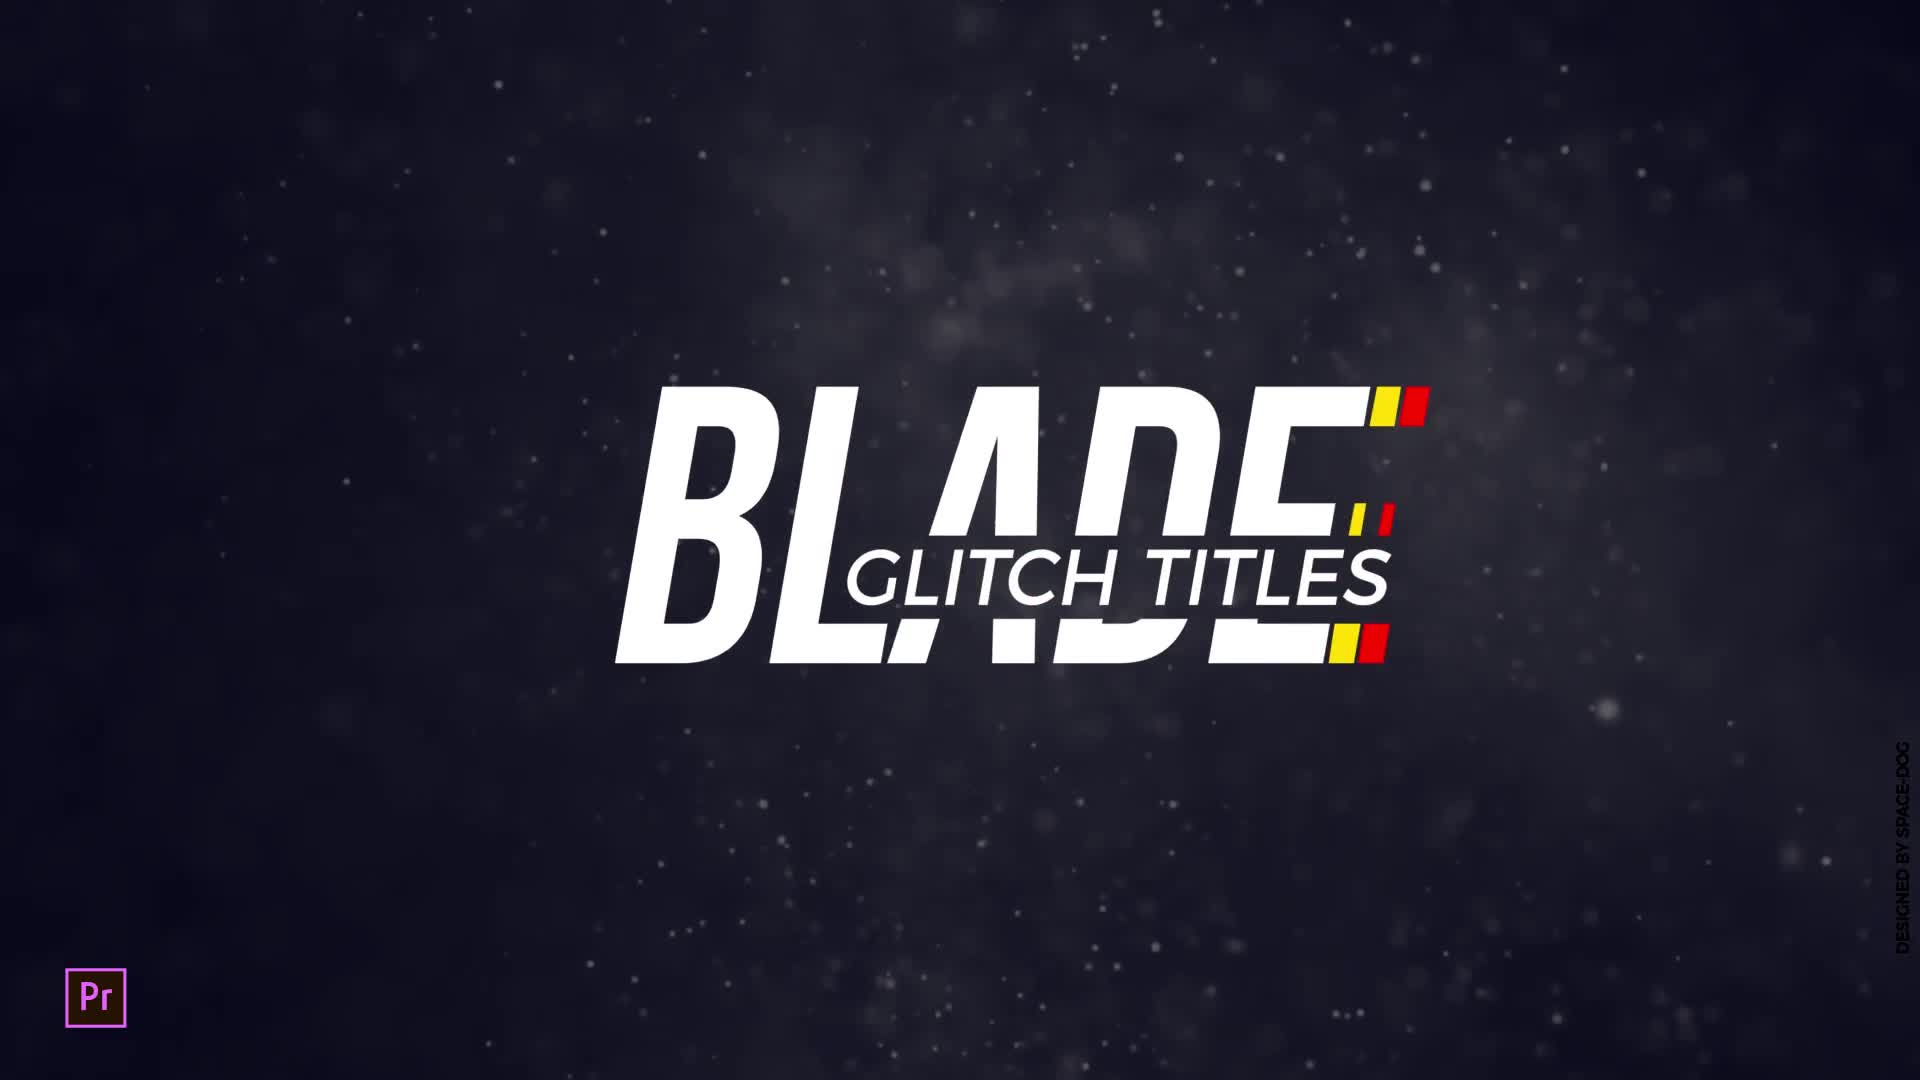 Blade Glitch Titles | Premiere Pro Videohive 28398702 Premiere Pro Image 1